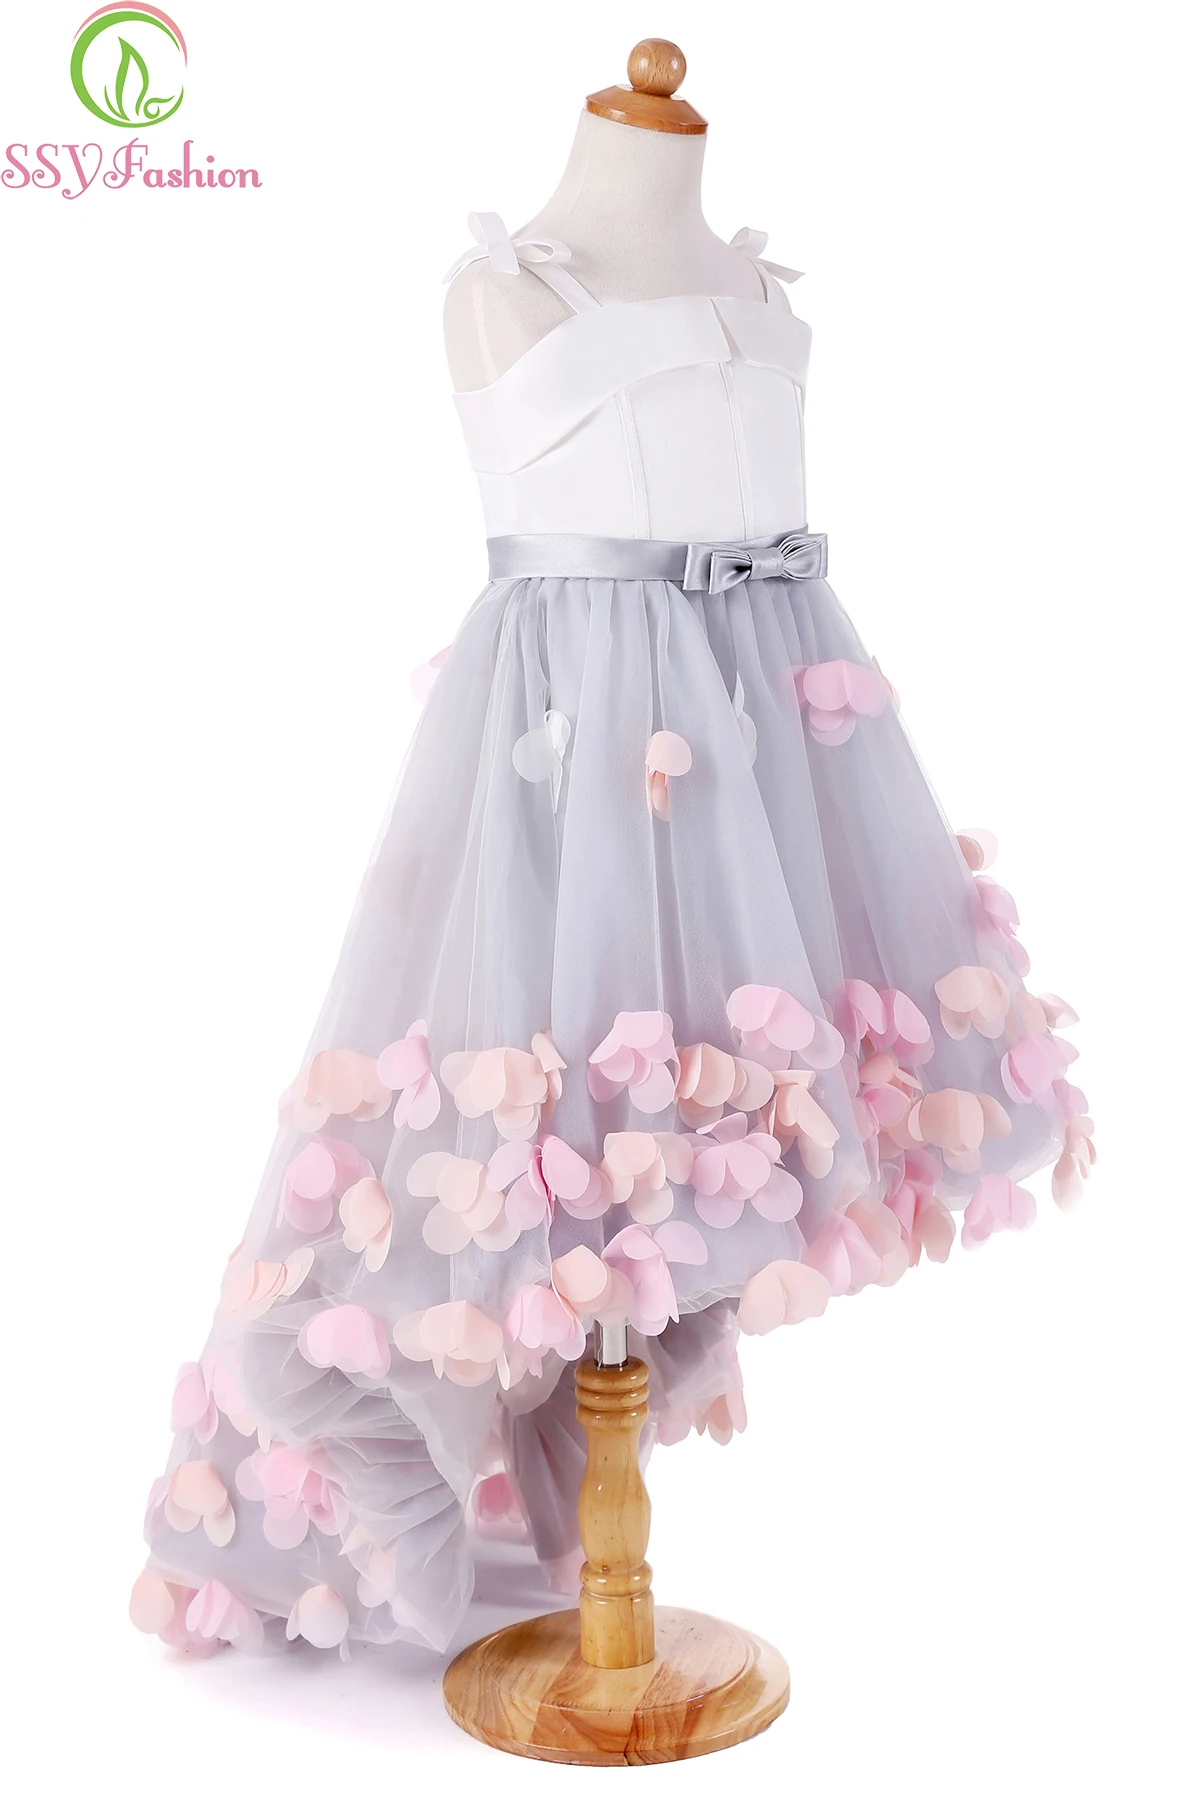 SSYFashion/новые милые Свадебные Платья с цветочным узором для девочек, короткие спереди и Длинные Сзади атласные вечерние платья с тюлевой аппликацией на бретельках Bll